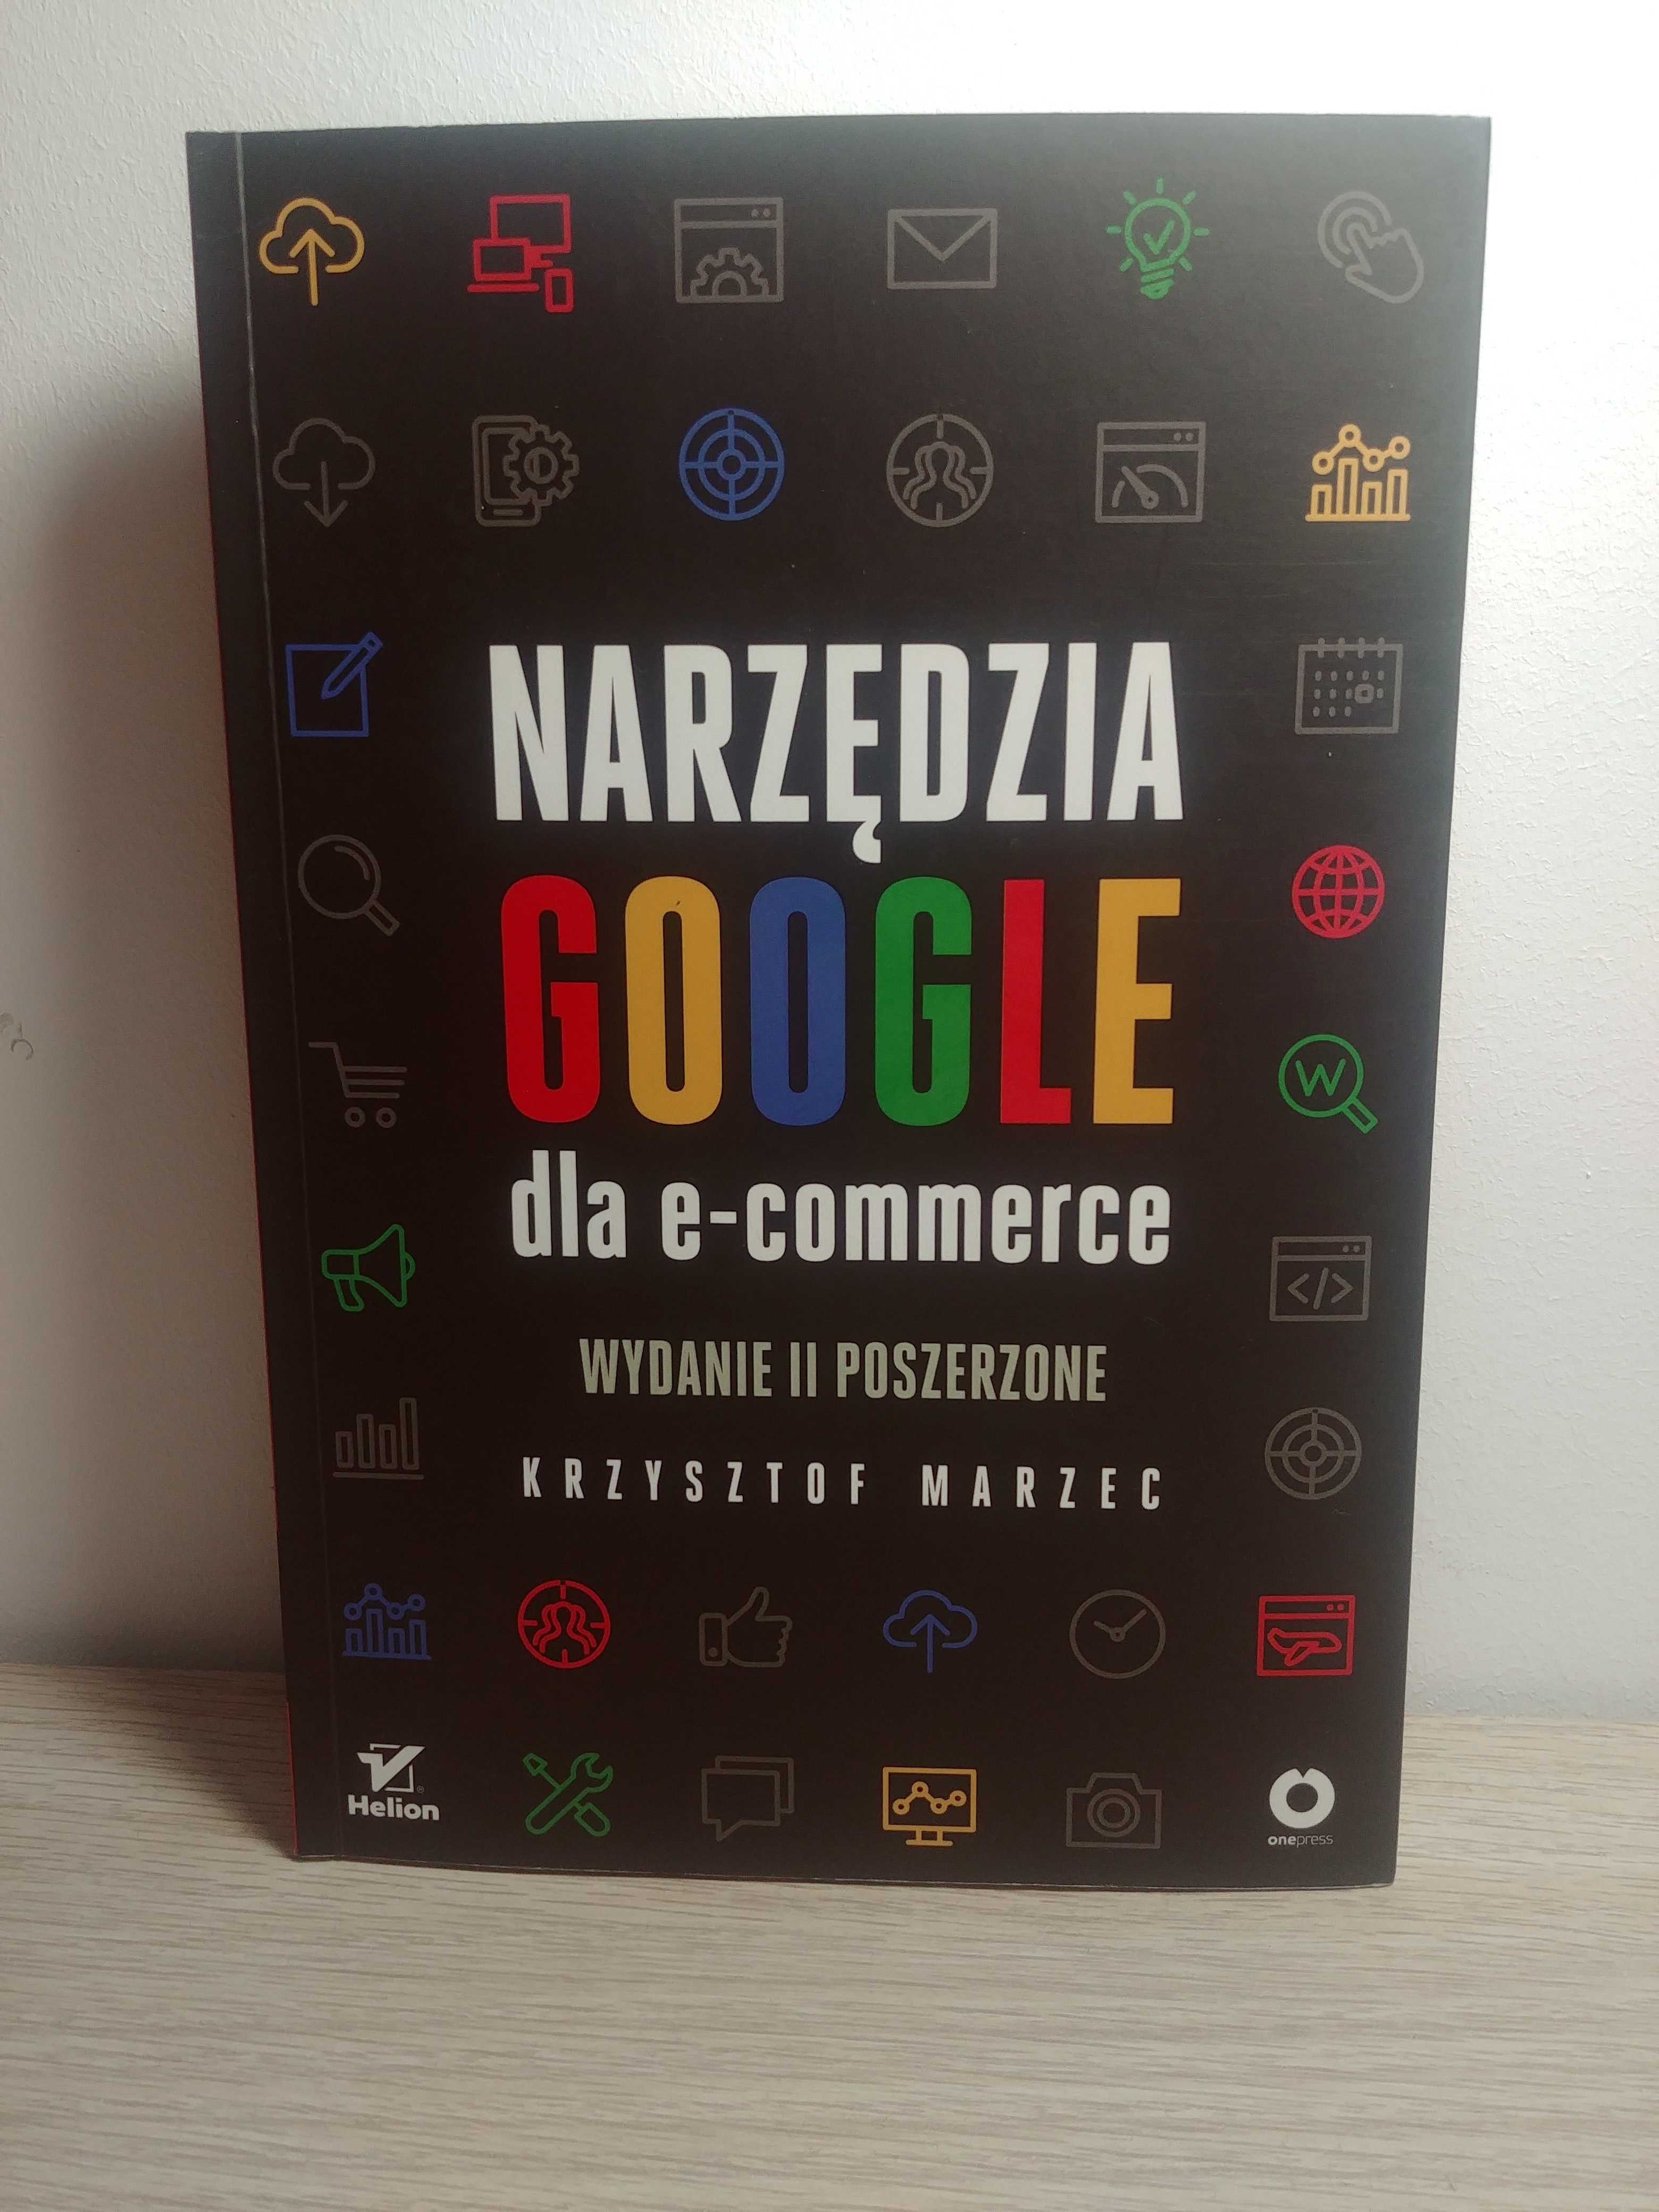 Narzędzia google dla e-commerce, Krzysztof Marzec